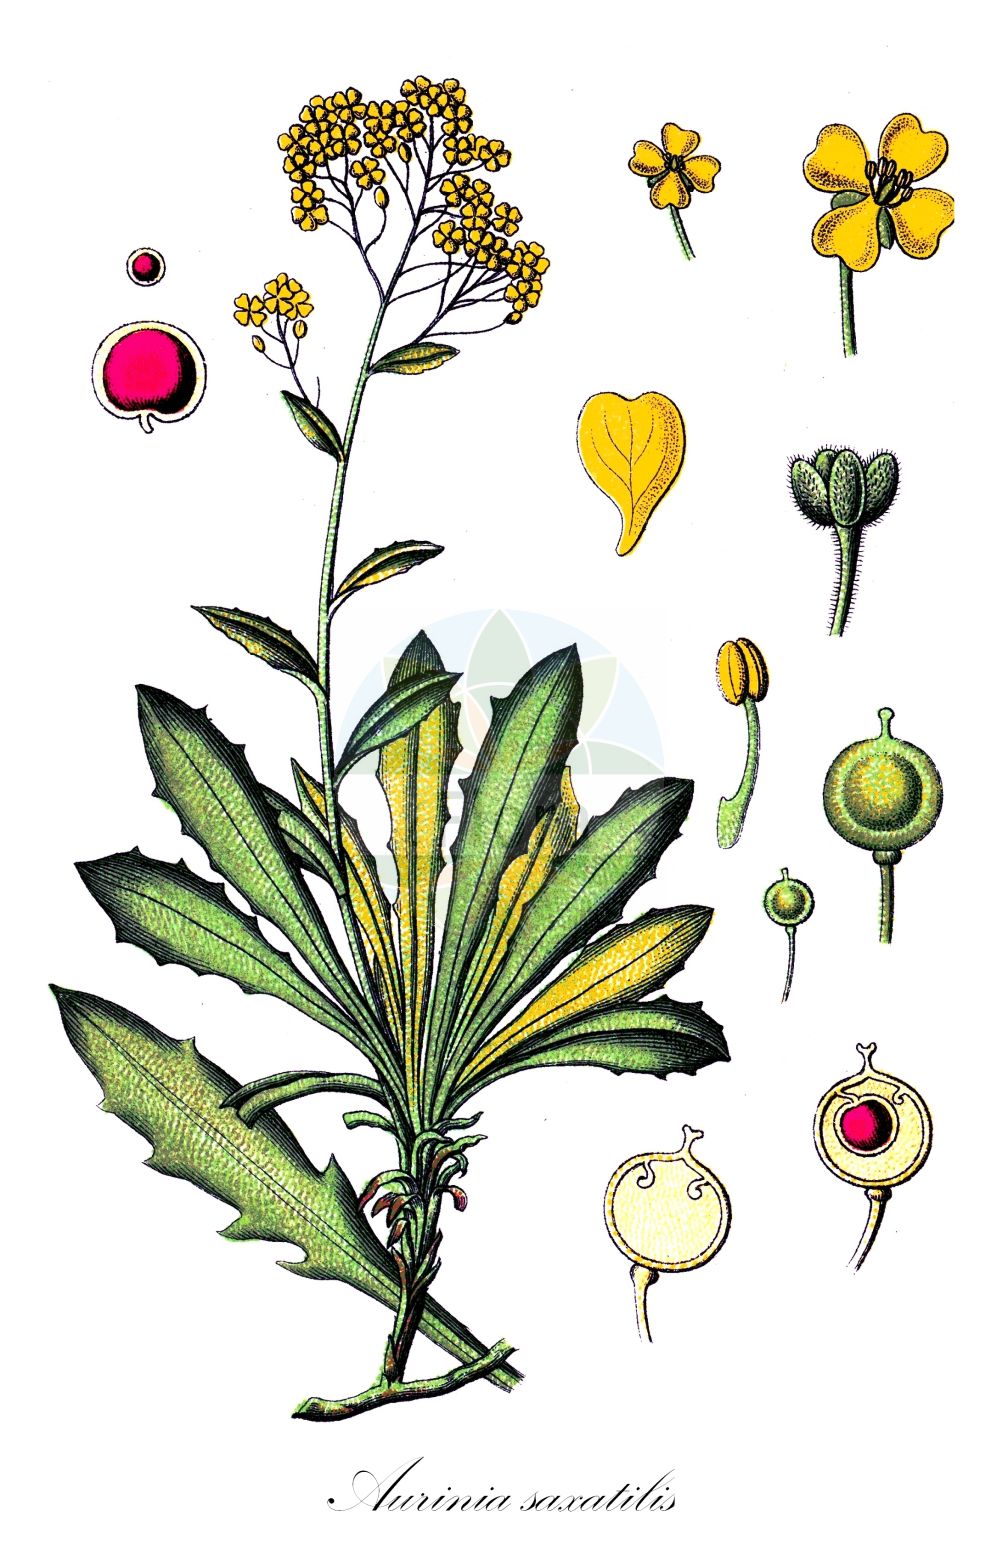 Historische Abbildung von Aurinia saxatilis (Felsen-Steinkraut - Golden Alison). Das Bild zeigt Blatt, Bluete, Frucht und Same. ---- Historical Drawing of Aurinia saxatilis (Felsen-Steinkraut - Golden Alison). The image is showing leaf, flower, fruit and seed.(Aurinia saxatilis,Felsen-Steinkraut,Golden Alison,Alyssum arduinii,Alyssum bilimekii,Alyssum ephesium,Alyssum saxatile,Aurinia saxatilis,Felsen-Steinkraut,Felsen-Steinkresse,Golden Alison,Gold Dust,Basket Of Gold,Golden Alyssum,Goldentuft,Rock Madwort,Aurinia,Steinkraut,Alison,Brassicaceae,Kreuzblütler,Cabbage family,Blatt,Bluete,Frucht,Same,leaf,flower,fruit,seed,Sturm (1796f))